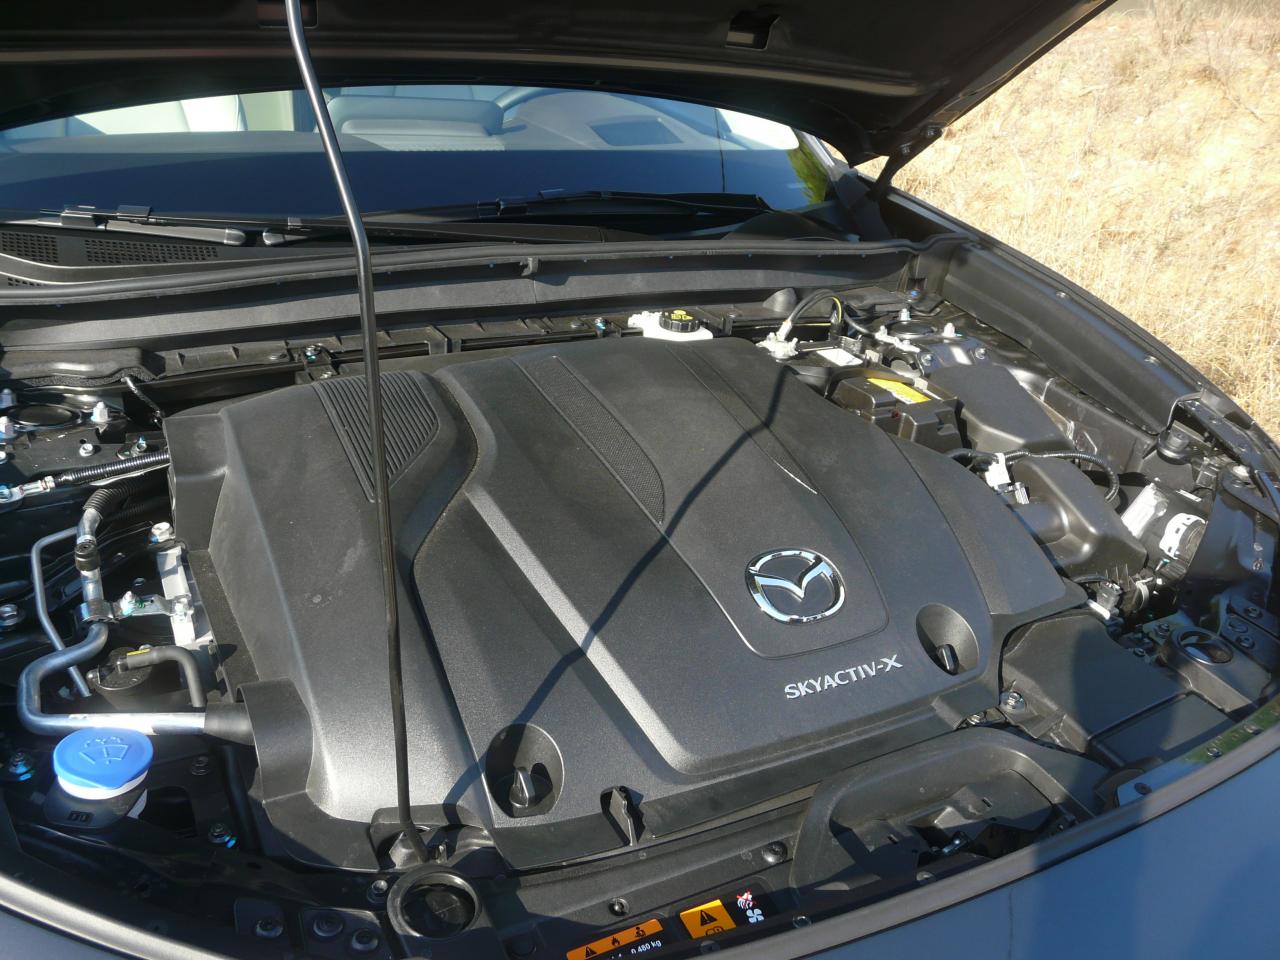 Comment fonctionne le moteur Skyactiv-X de Mazda ?